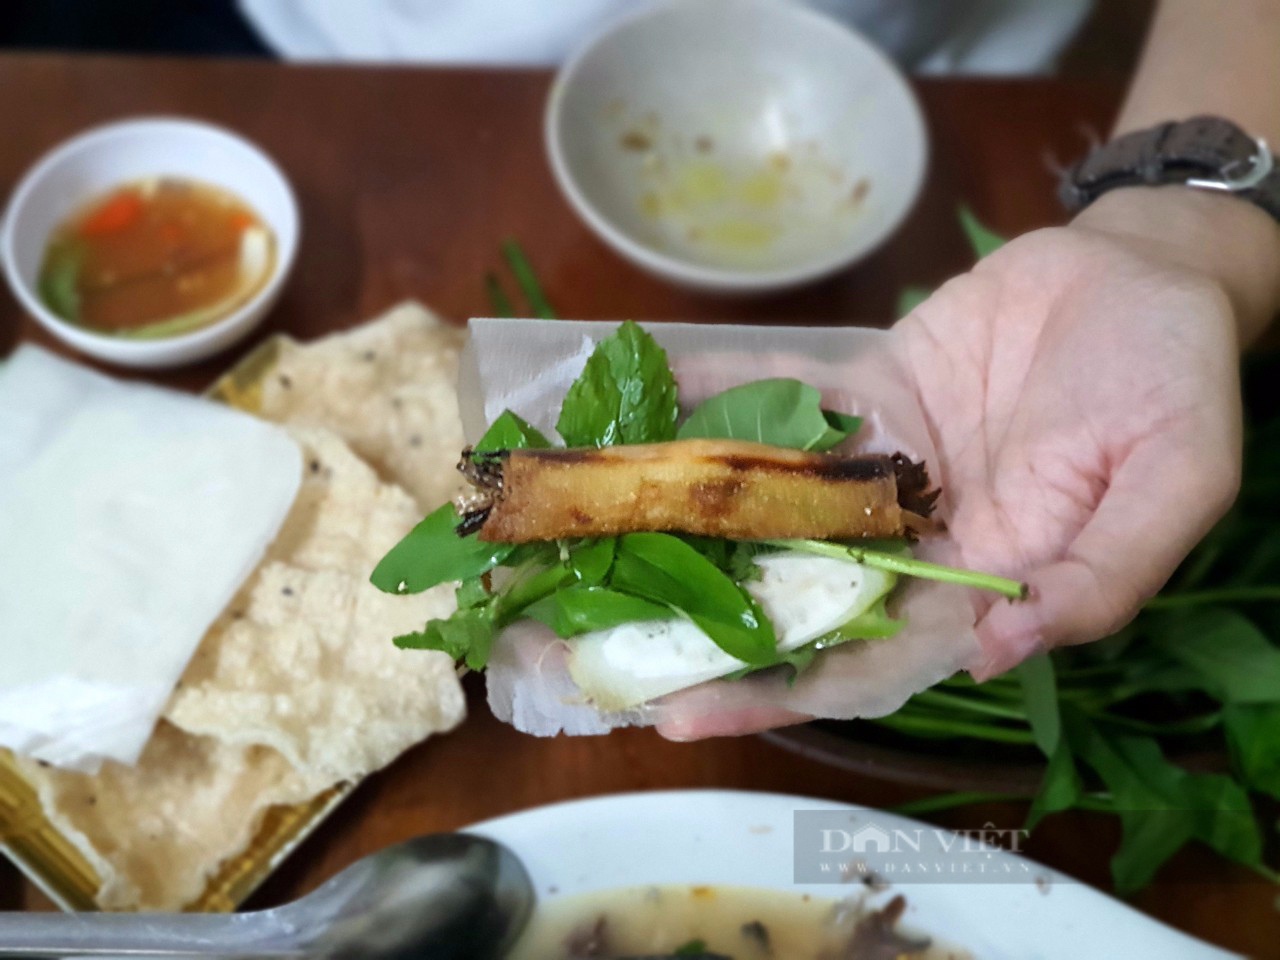 Sài Gòn quán: Địa chỉ ẩm thực xứ Quảng nổi tiếng bậc nhất, chủ nhân là nhà văn của nhiều thế hệ độc giả - Ảnh 6.